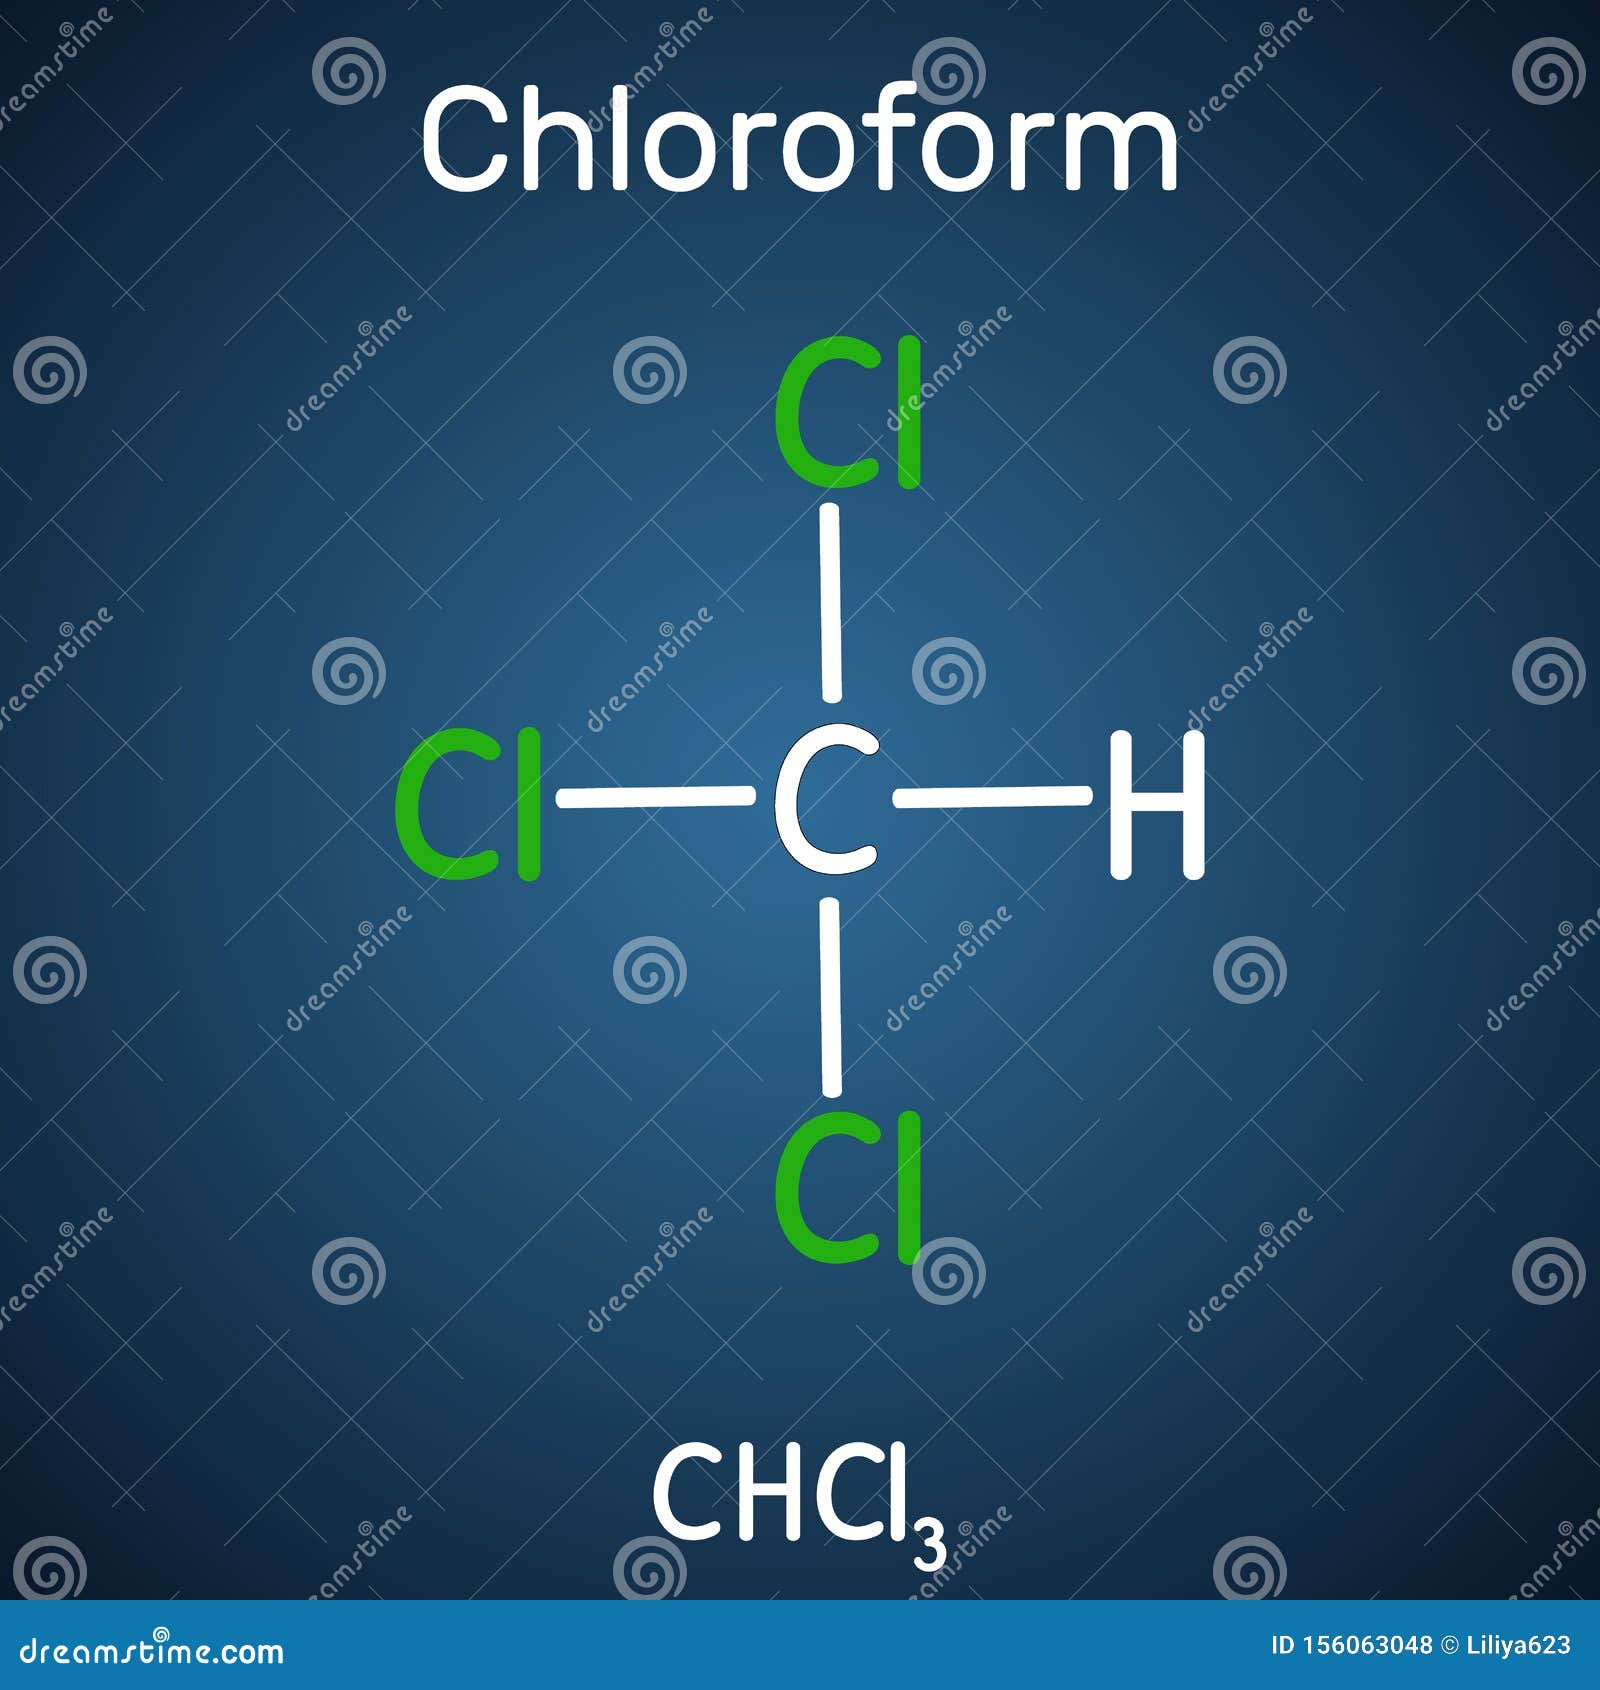 Chloroform oder trichloromethane Molekül. es ist betäubender euphorisierender Anxiolytic und Beruhigungsmittel. strukturelle chemi. Chloroform oder trichloromethane Molekül. es ist betäubender euphorisierender Anxiolytic und Beruhigungsmittel. strukturelles chemische Formel- und Molekülmodell. Vektorillustration